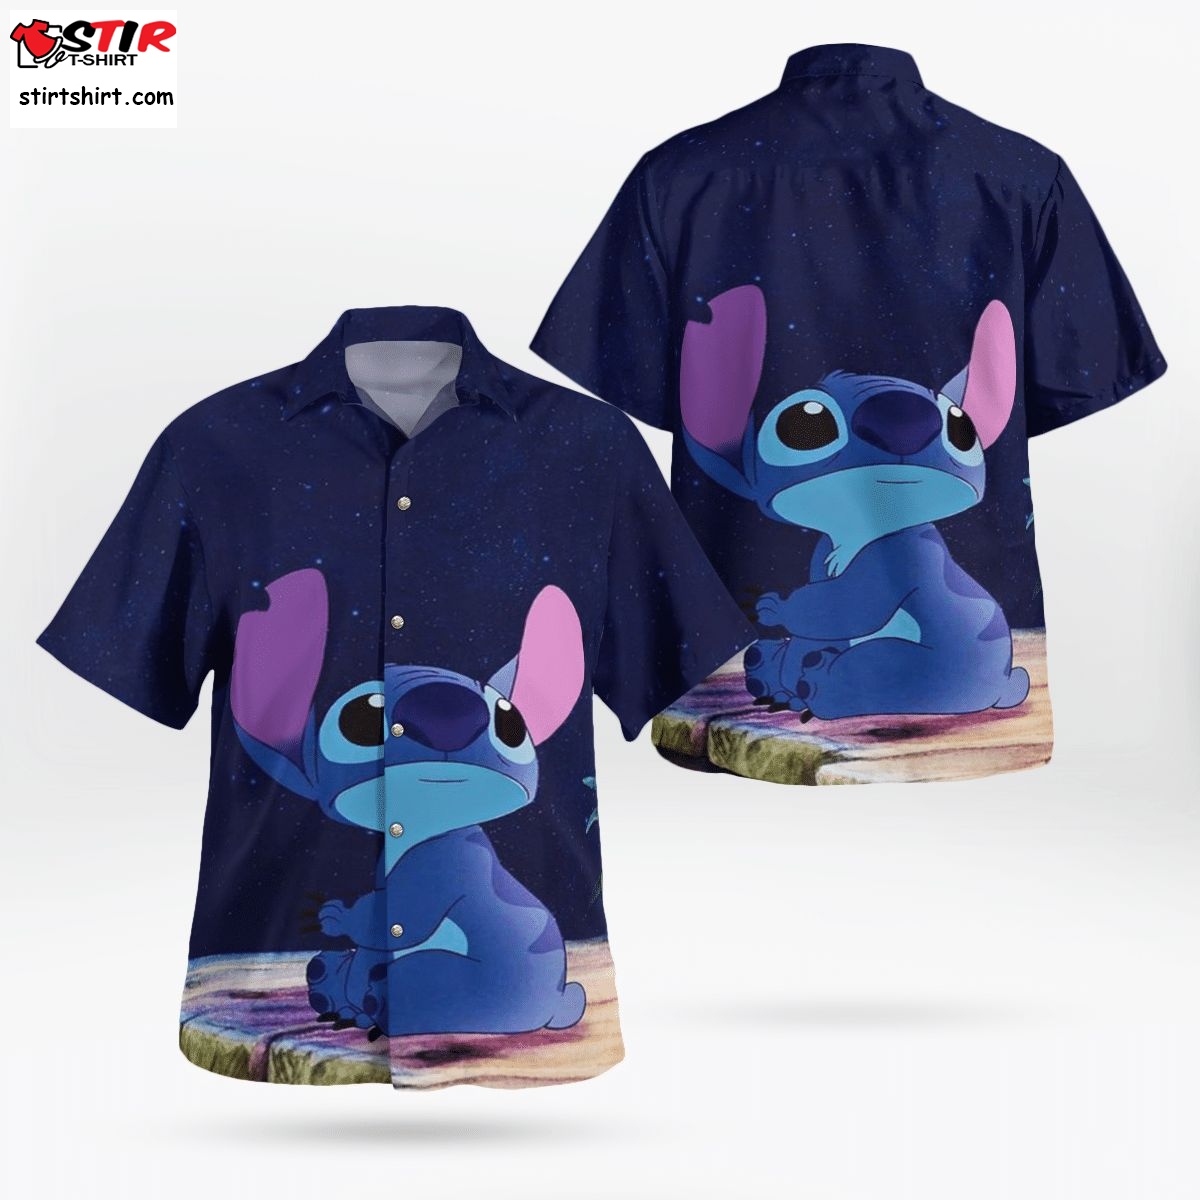 Disney Stitch And Lilo , Disney Stitch And Lilo Gift, Disney Stitch And Lilo Hawaiian Shirt  Disney s